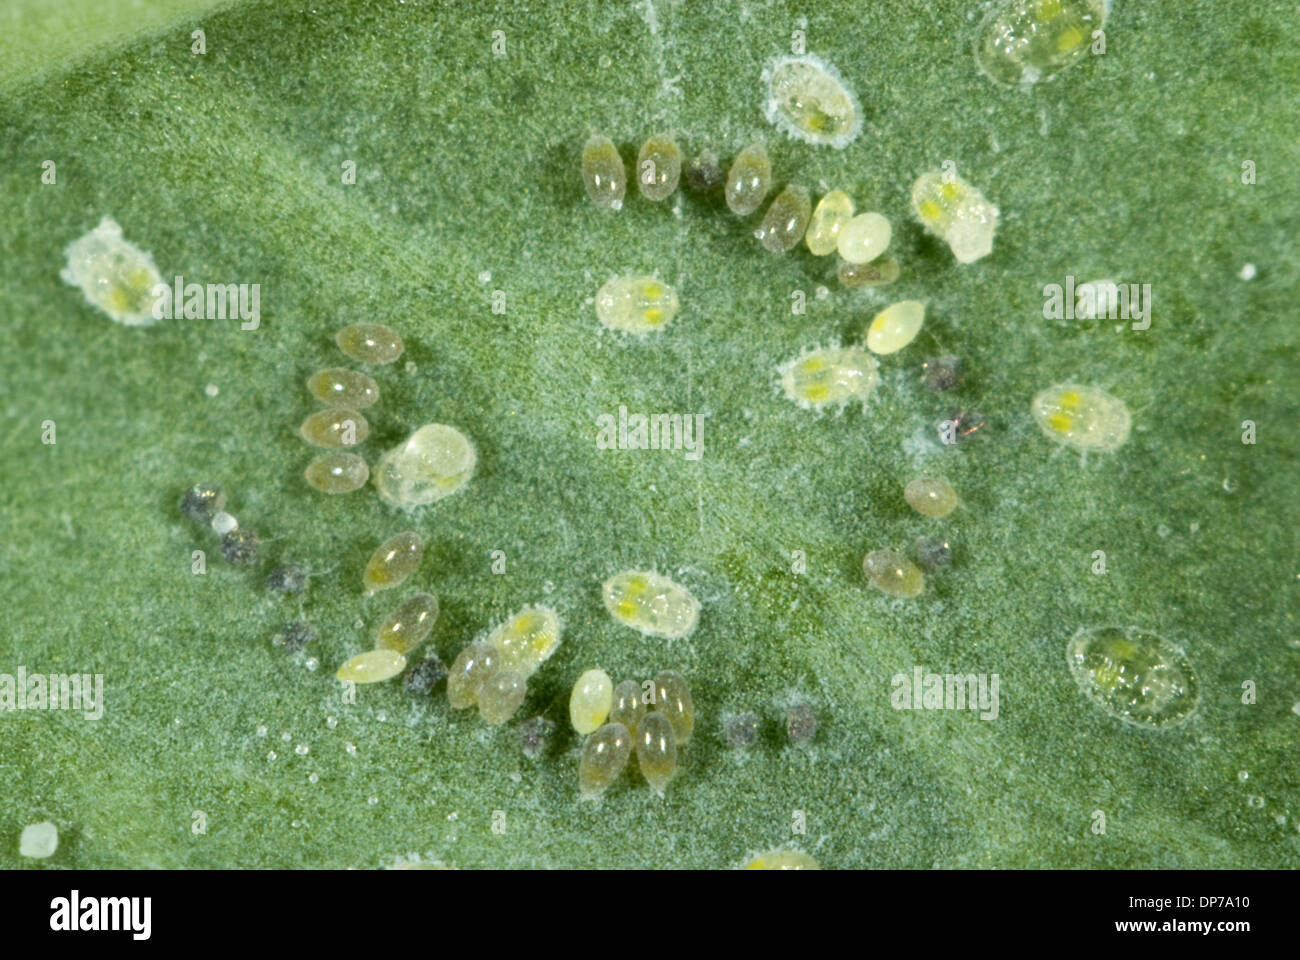 Kohl Mottenschildläuse, Aleyrodes Proletella, Eiablage in einem Kreis auf ein Kohlblatt Stockfoto